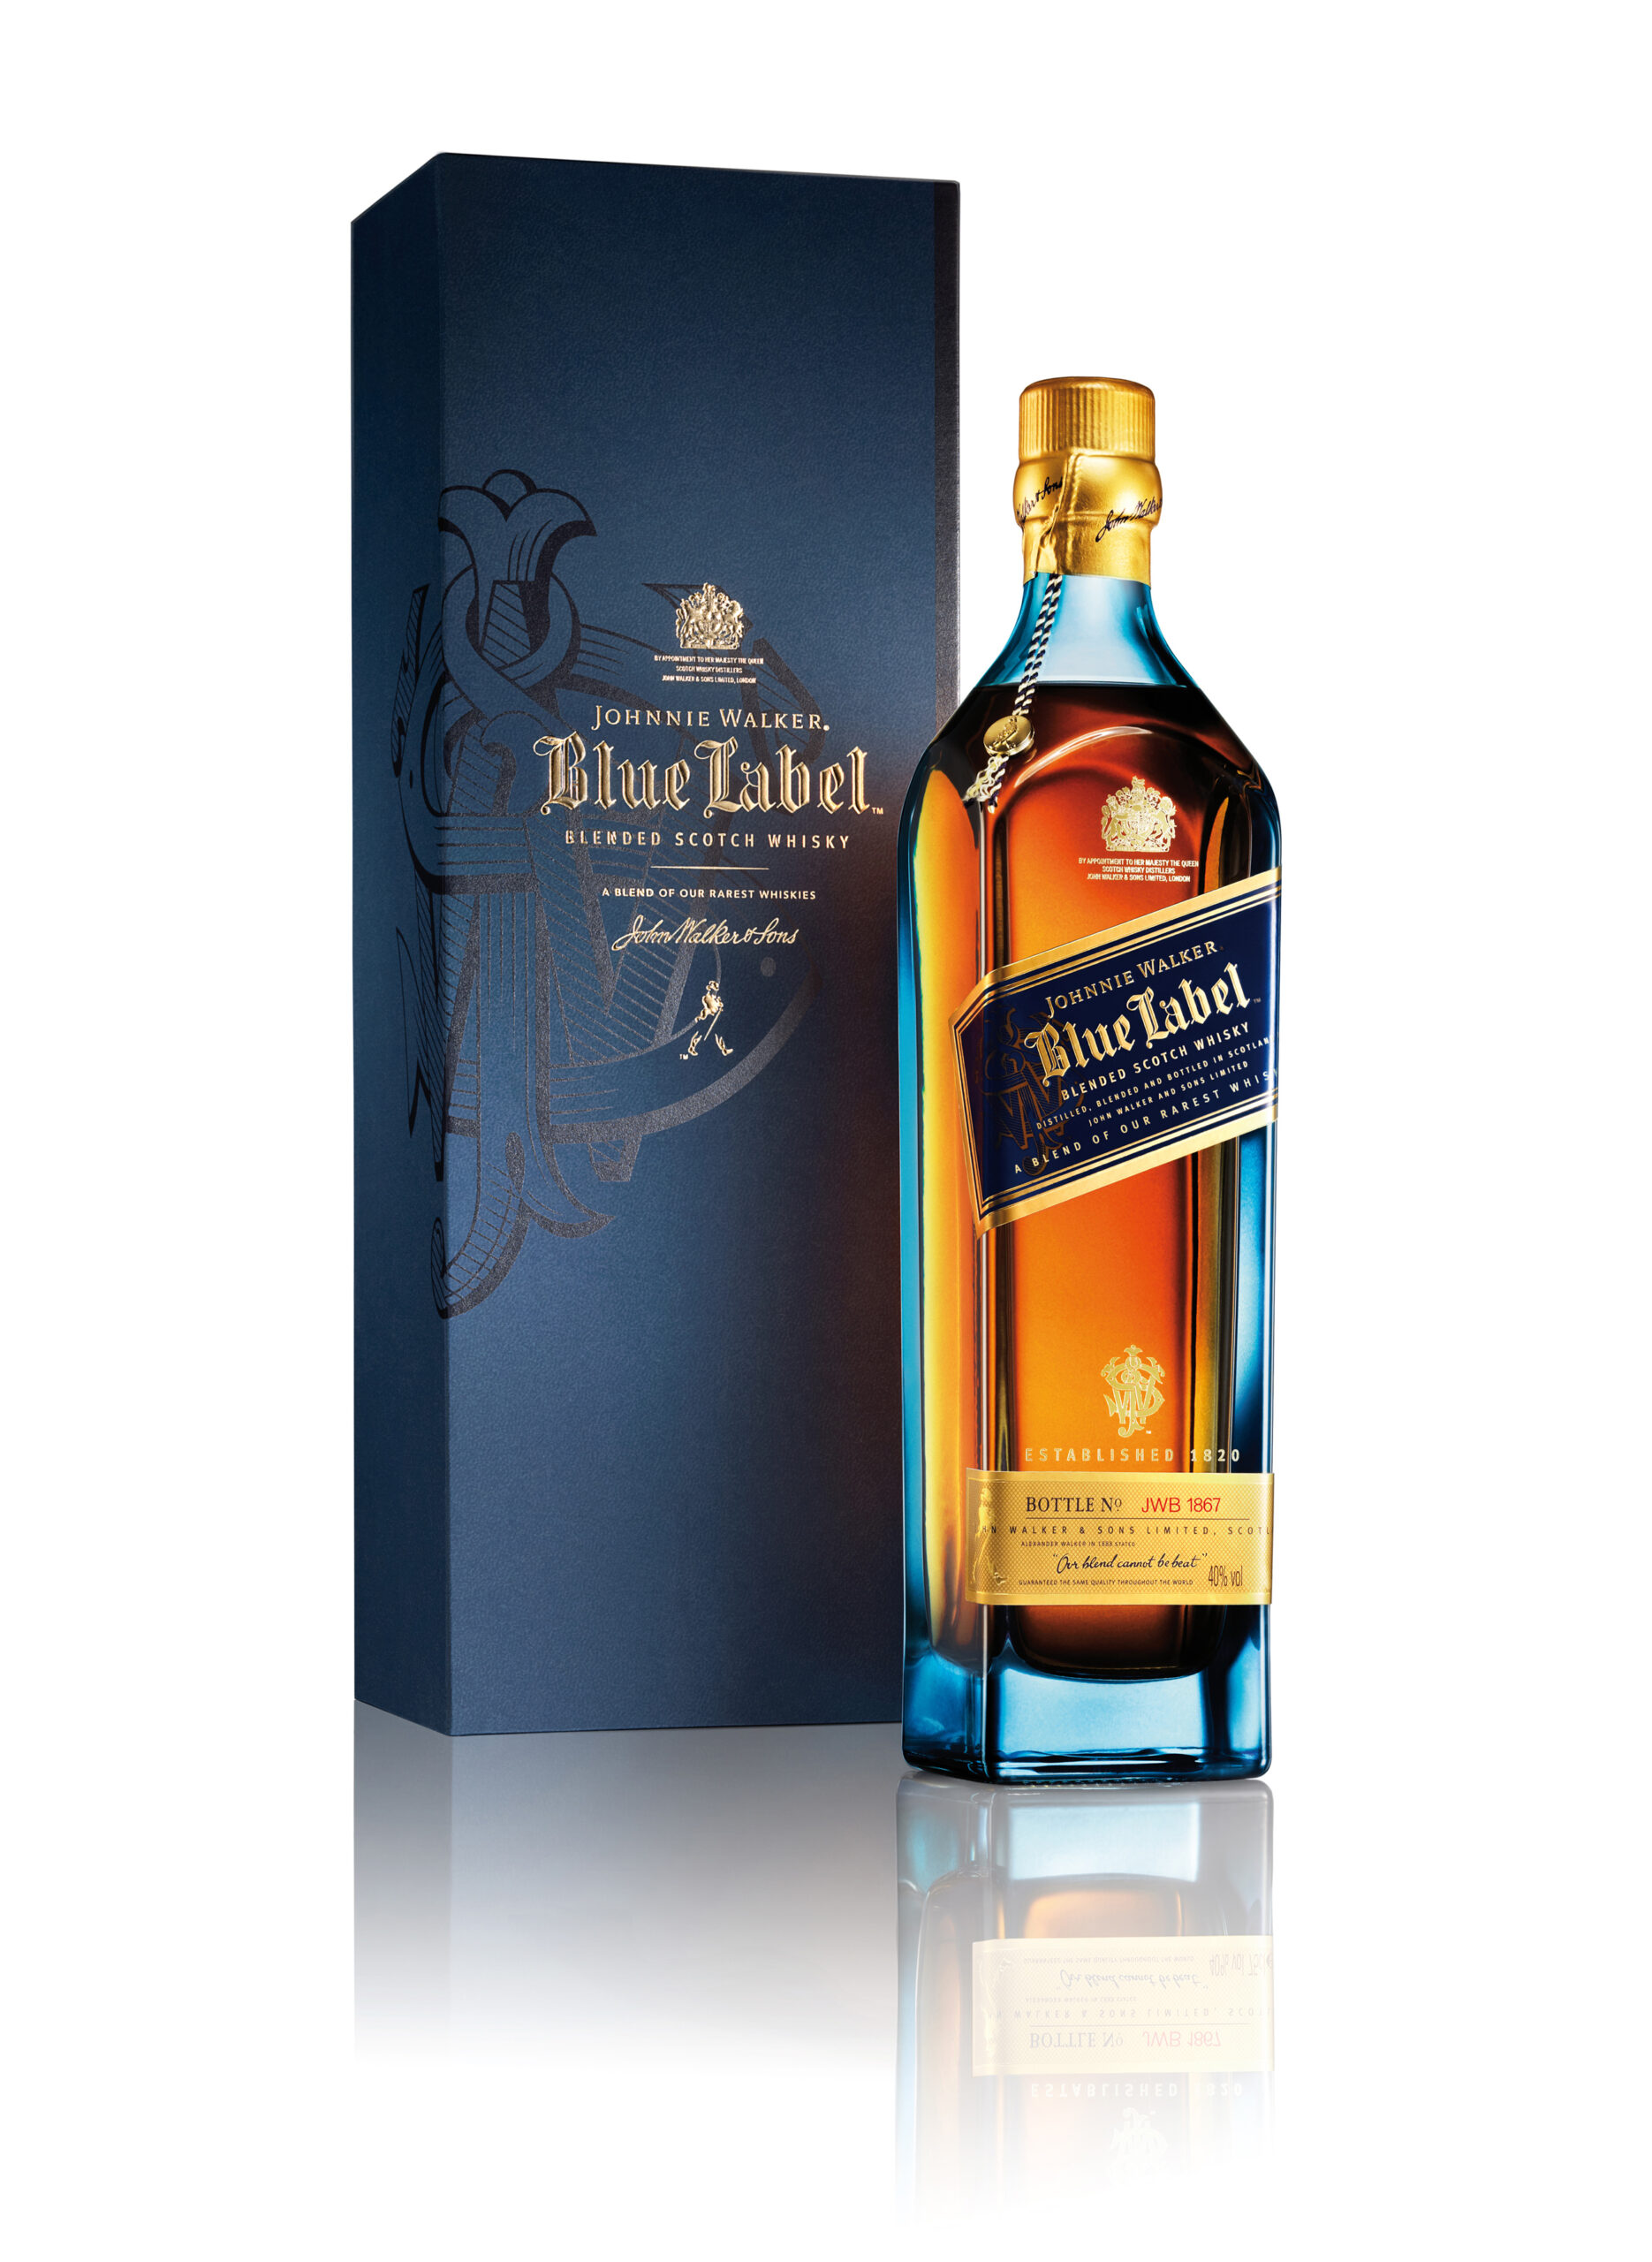 JOHNNIE WALKER BLUE LABEL Blended Scotch Whisky